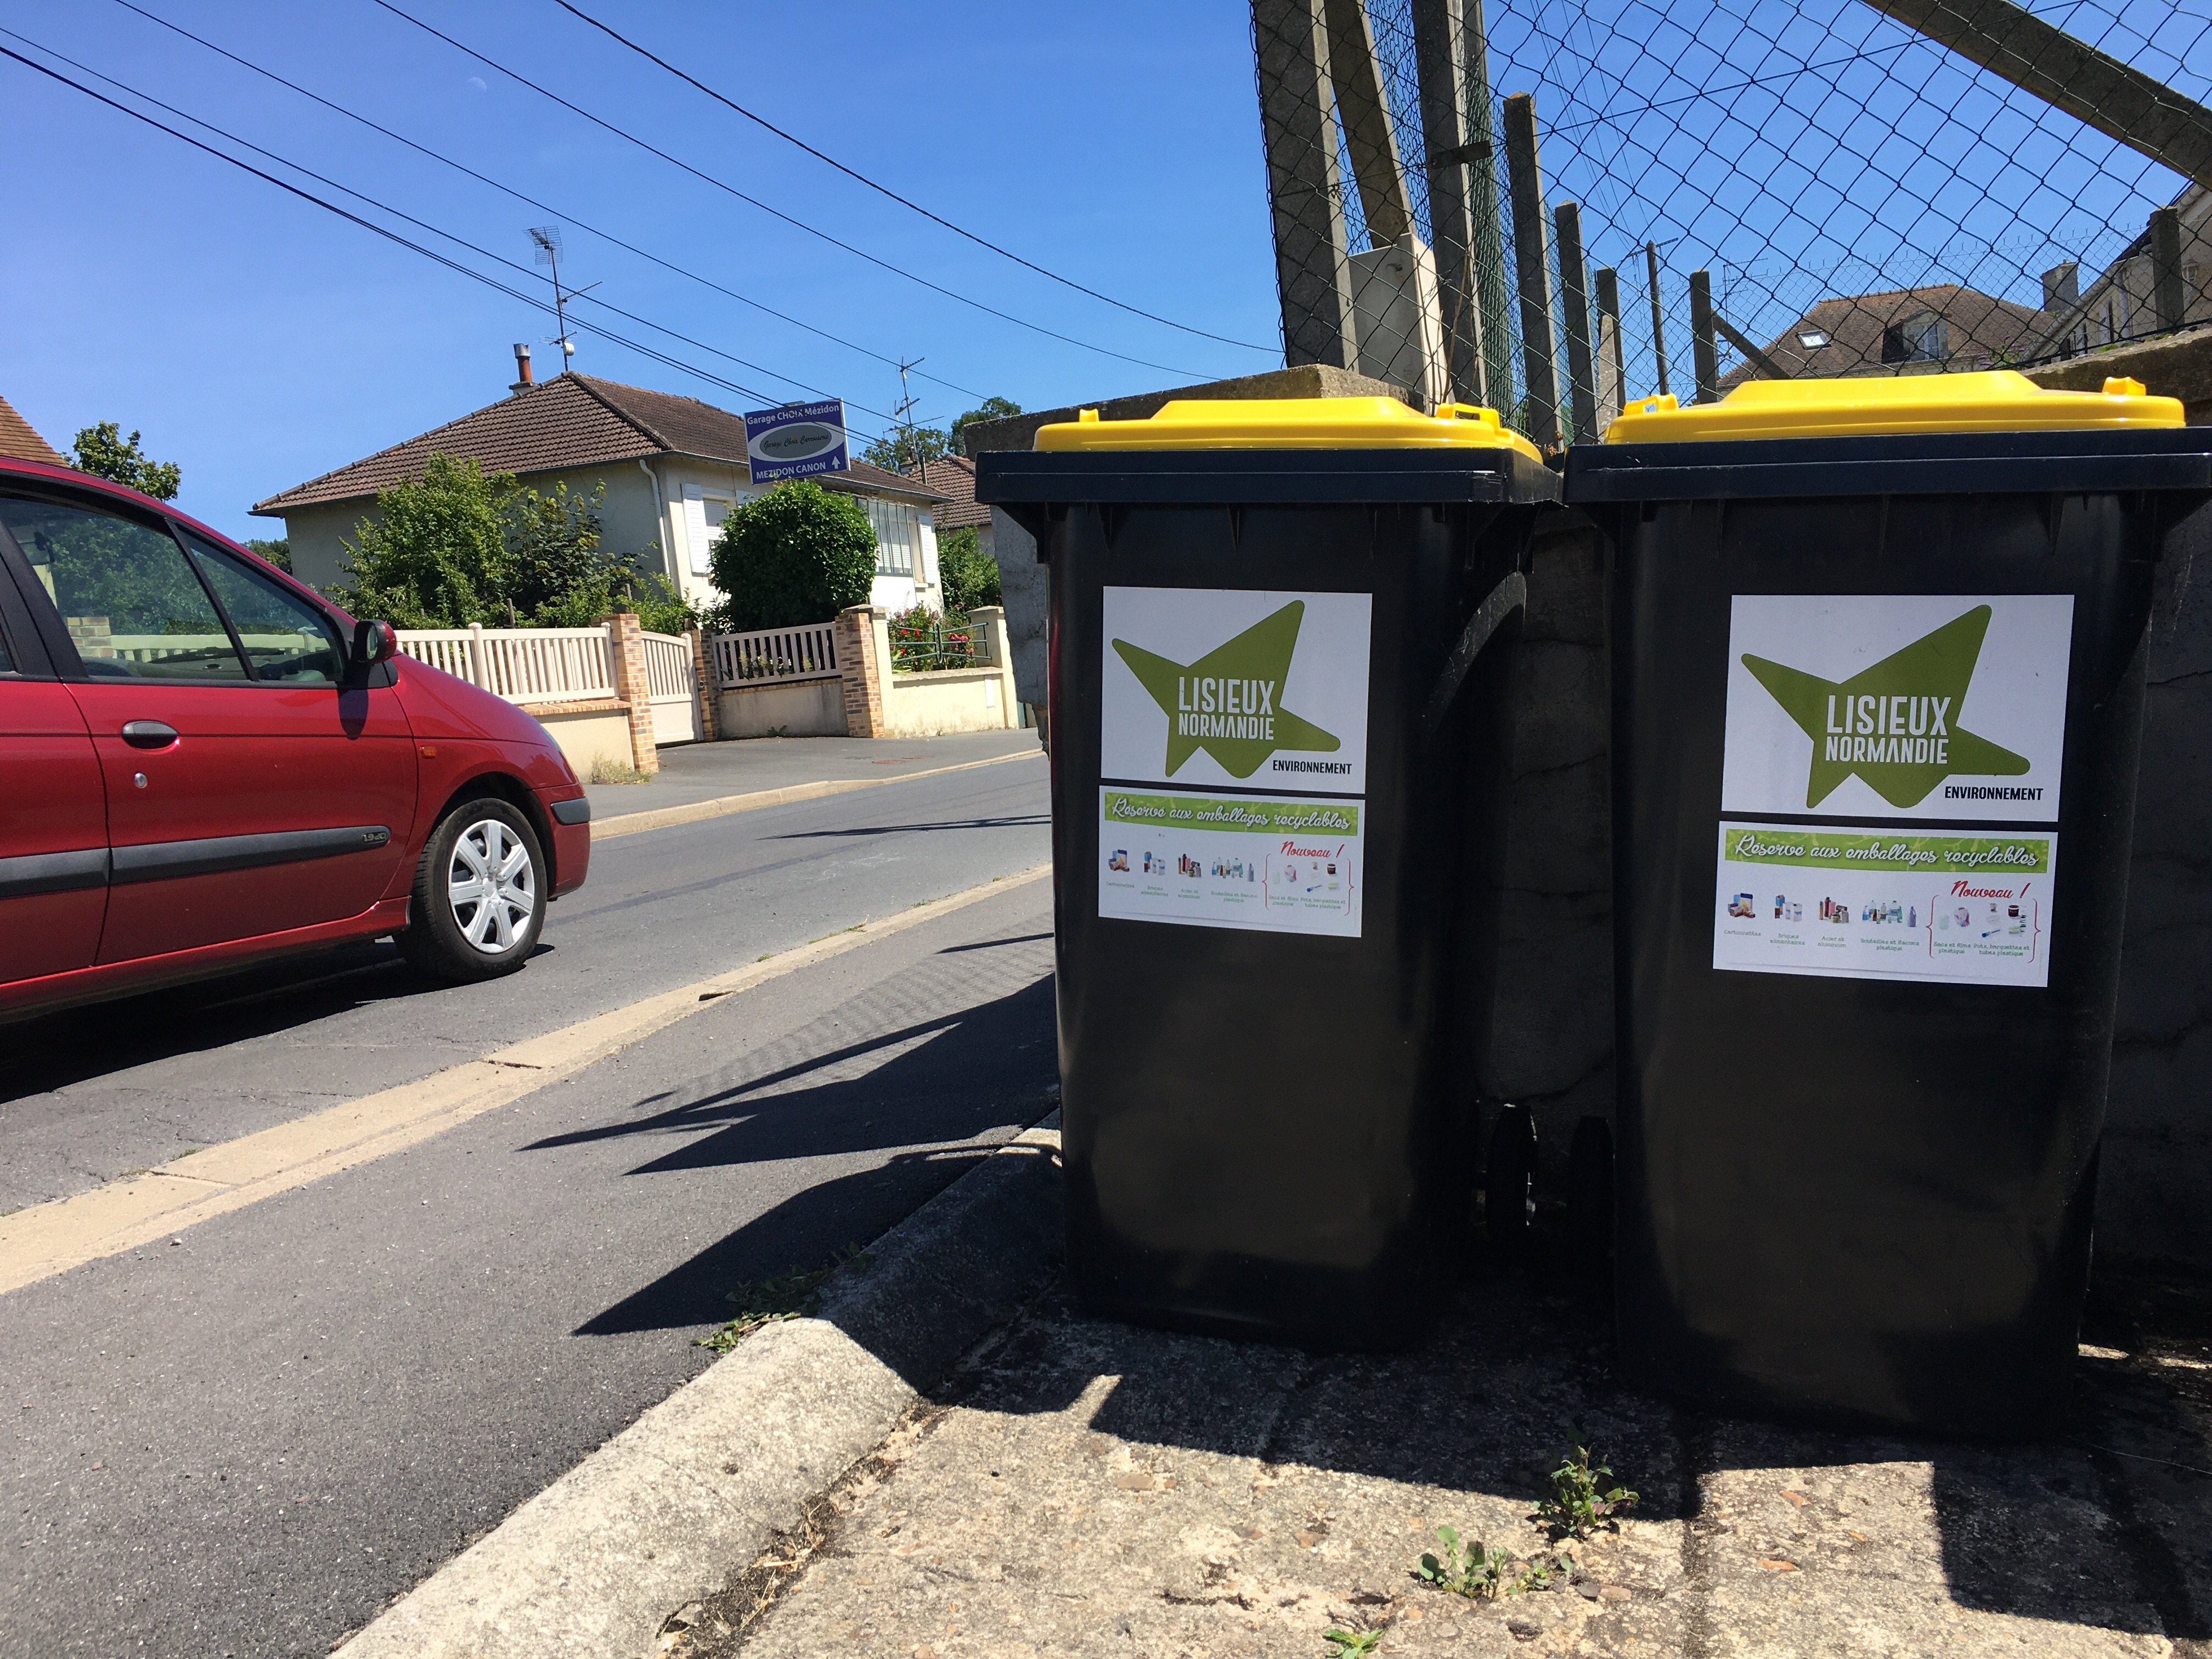 De nombreuses poubelles traditionnelles vont disparaître du paysage de Lisieux agglomération à compter de 2025, où le ramassage des ordures en porte à porte sera remplacé par un système d’apport volontaire dans des points de collecte. LP/Esteban Pinel